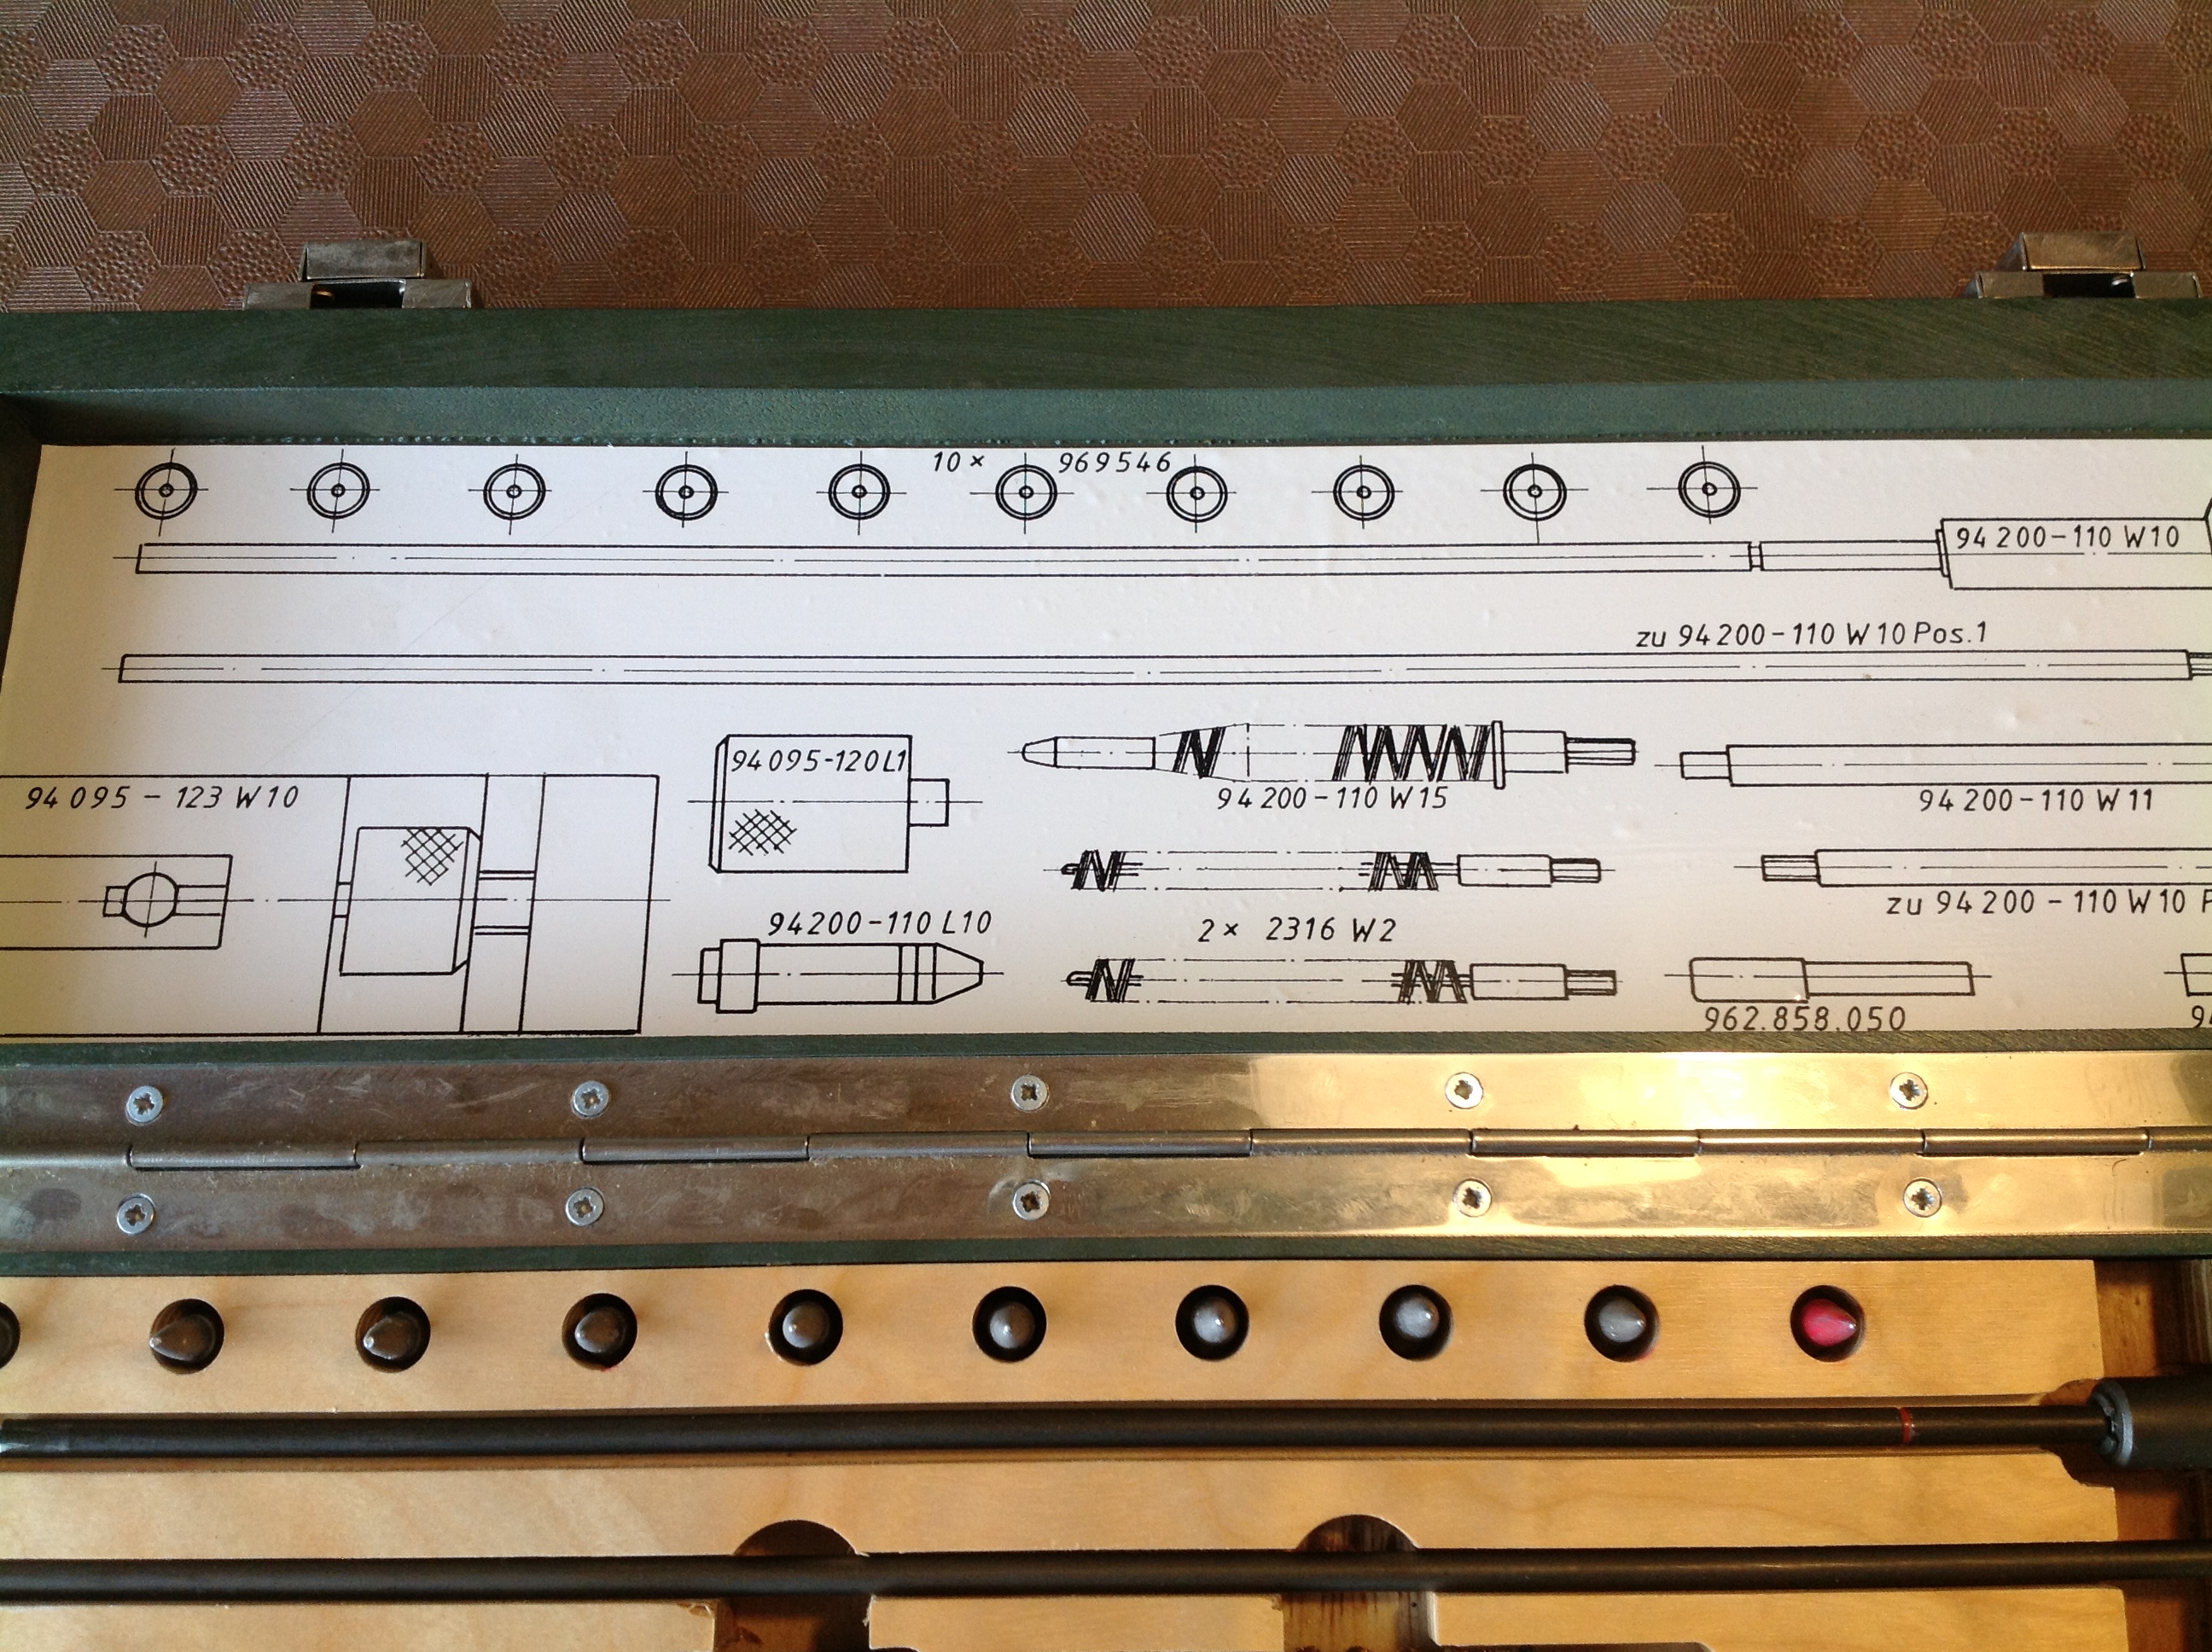 Sonderwerkzeugsatz Mess- und Prüfgeräte für G 36 / MG 36